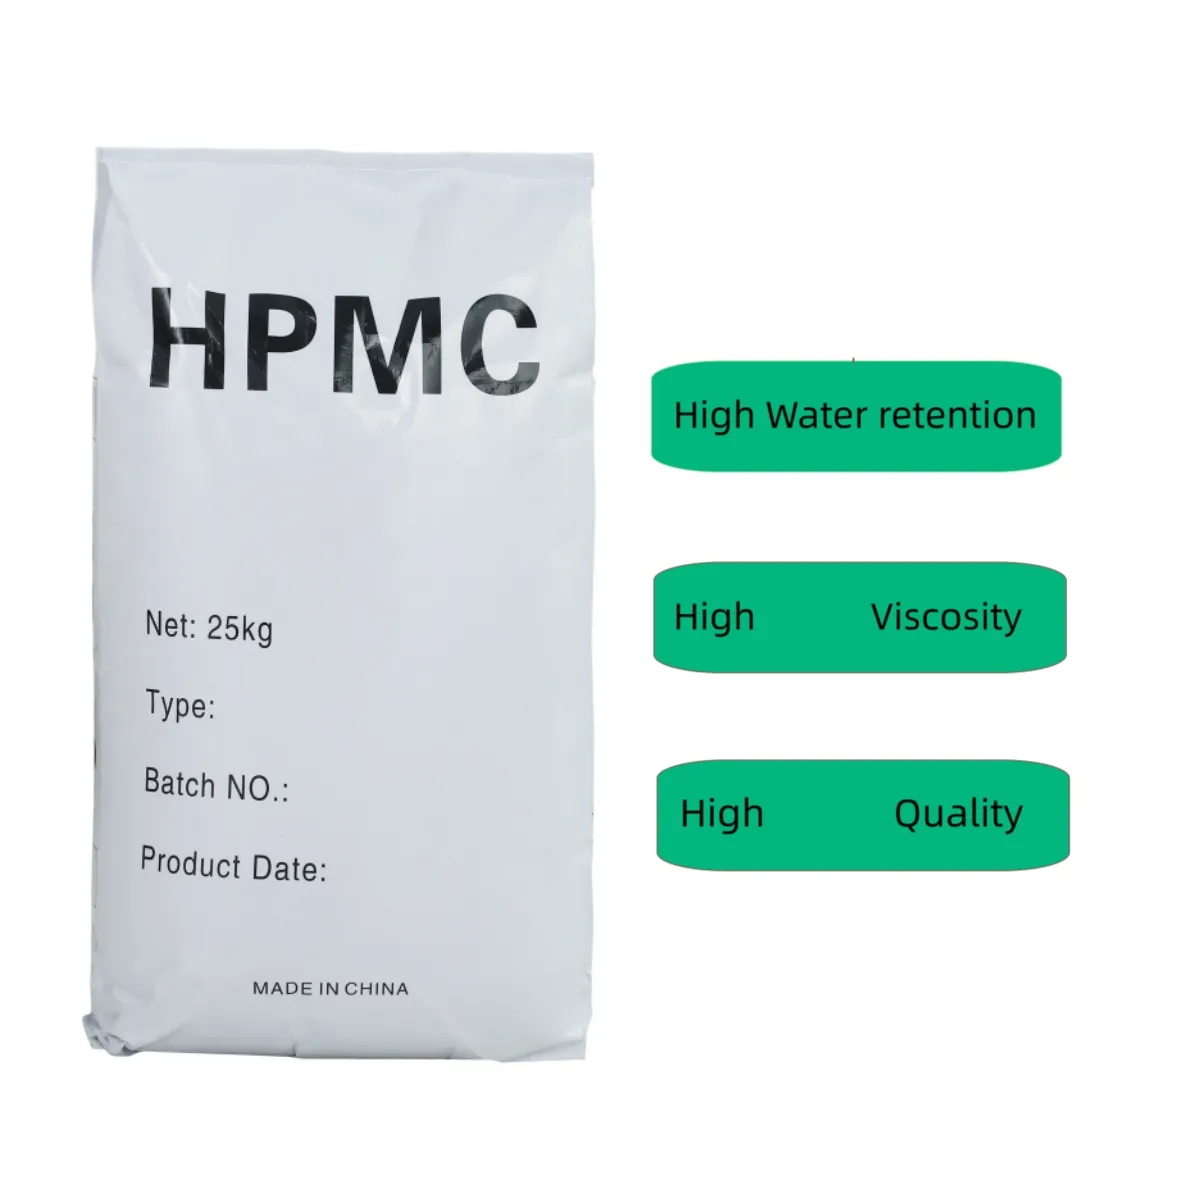 उच्च गुणवत्ता वाले सेल्फ हीलिंग कंक्रीट एचपीएमसी 25 किग्रा/बैग सीएएस 9004-65-3 फैक्टरी मूल्य